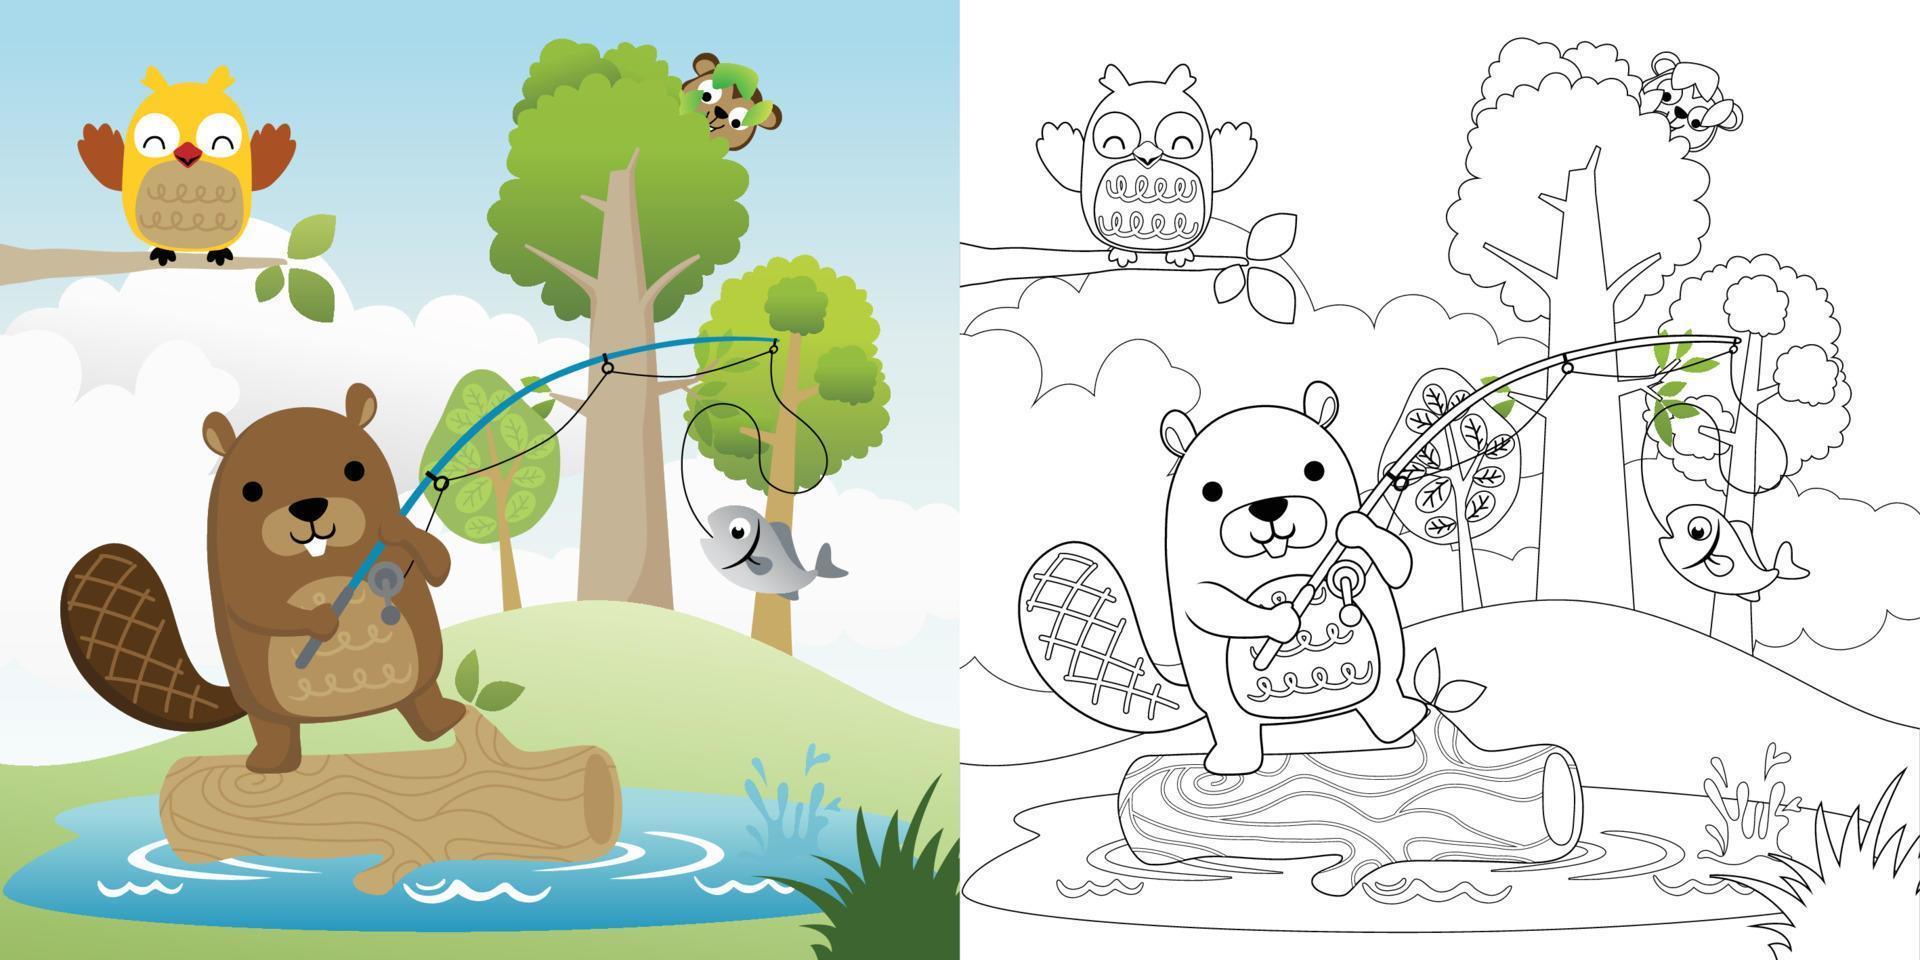 vetor ilustração, coloração livro do Castor pescaria, coruja poleiro em árvore galhos, macaco se escondendo em árvore